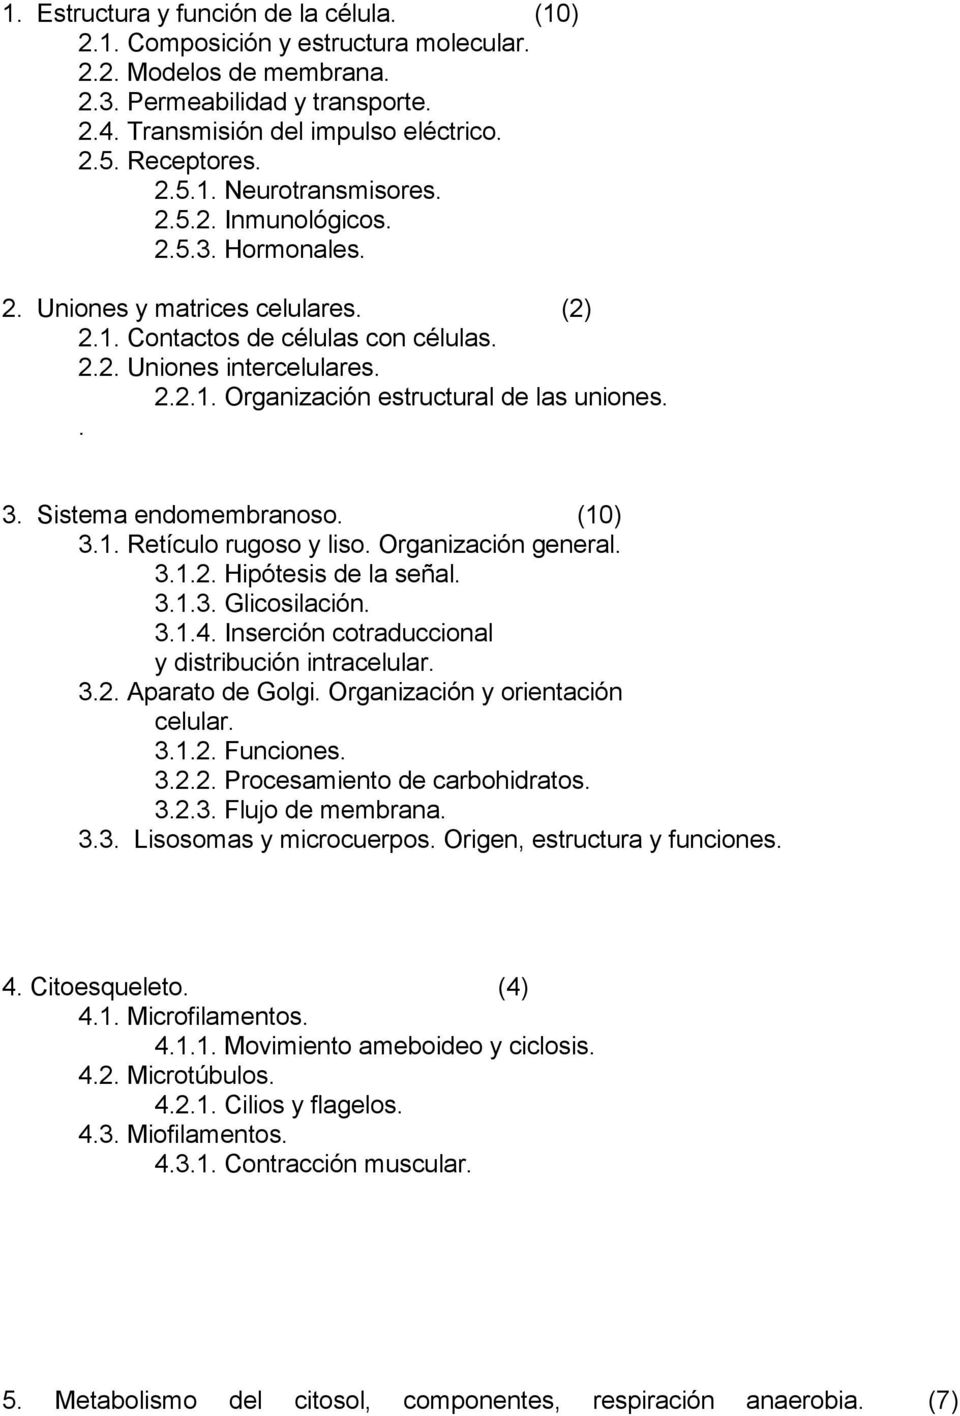 . 3. Sistema endomembranoso. (10) 3.1. Retículo rugoso y liso. Organización general. 3.1.2. Hipótesis de la señal. 3.1.3. Glicosilación. 3.1.4. Inserción cotraduccional y distribución intracelular. 3.2. Aparato de Golgi.